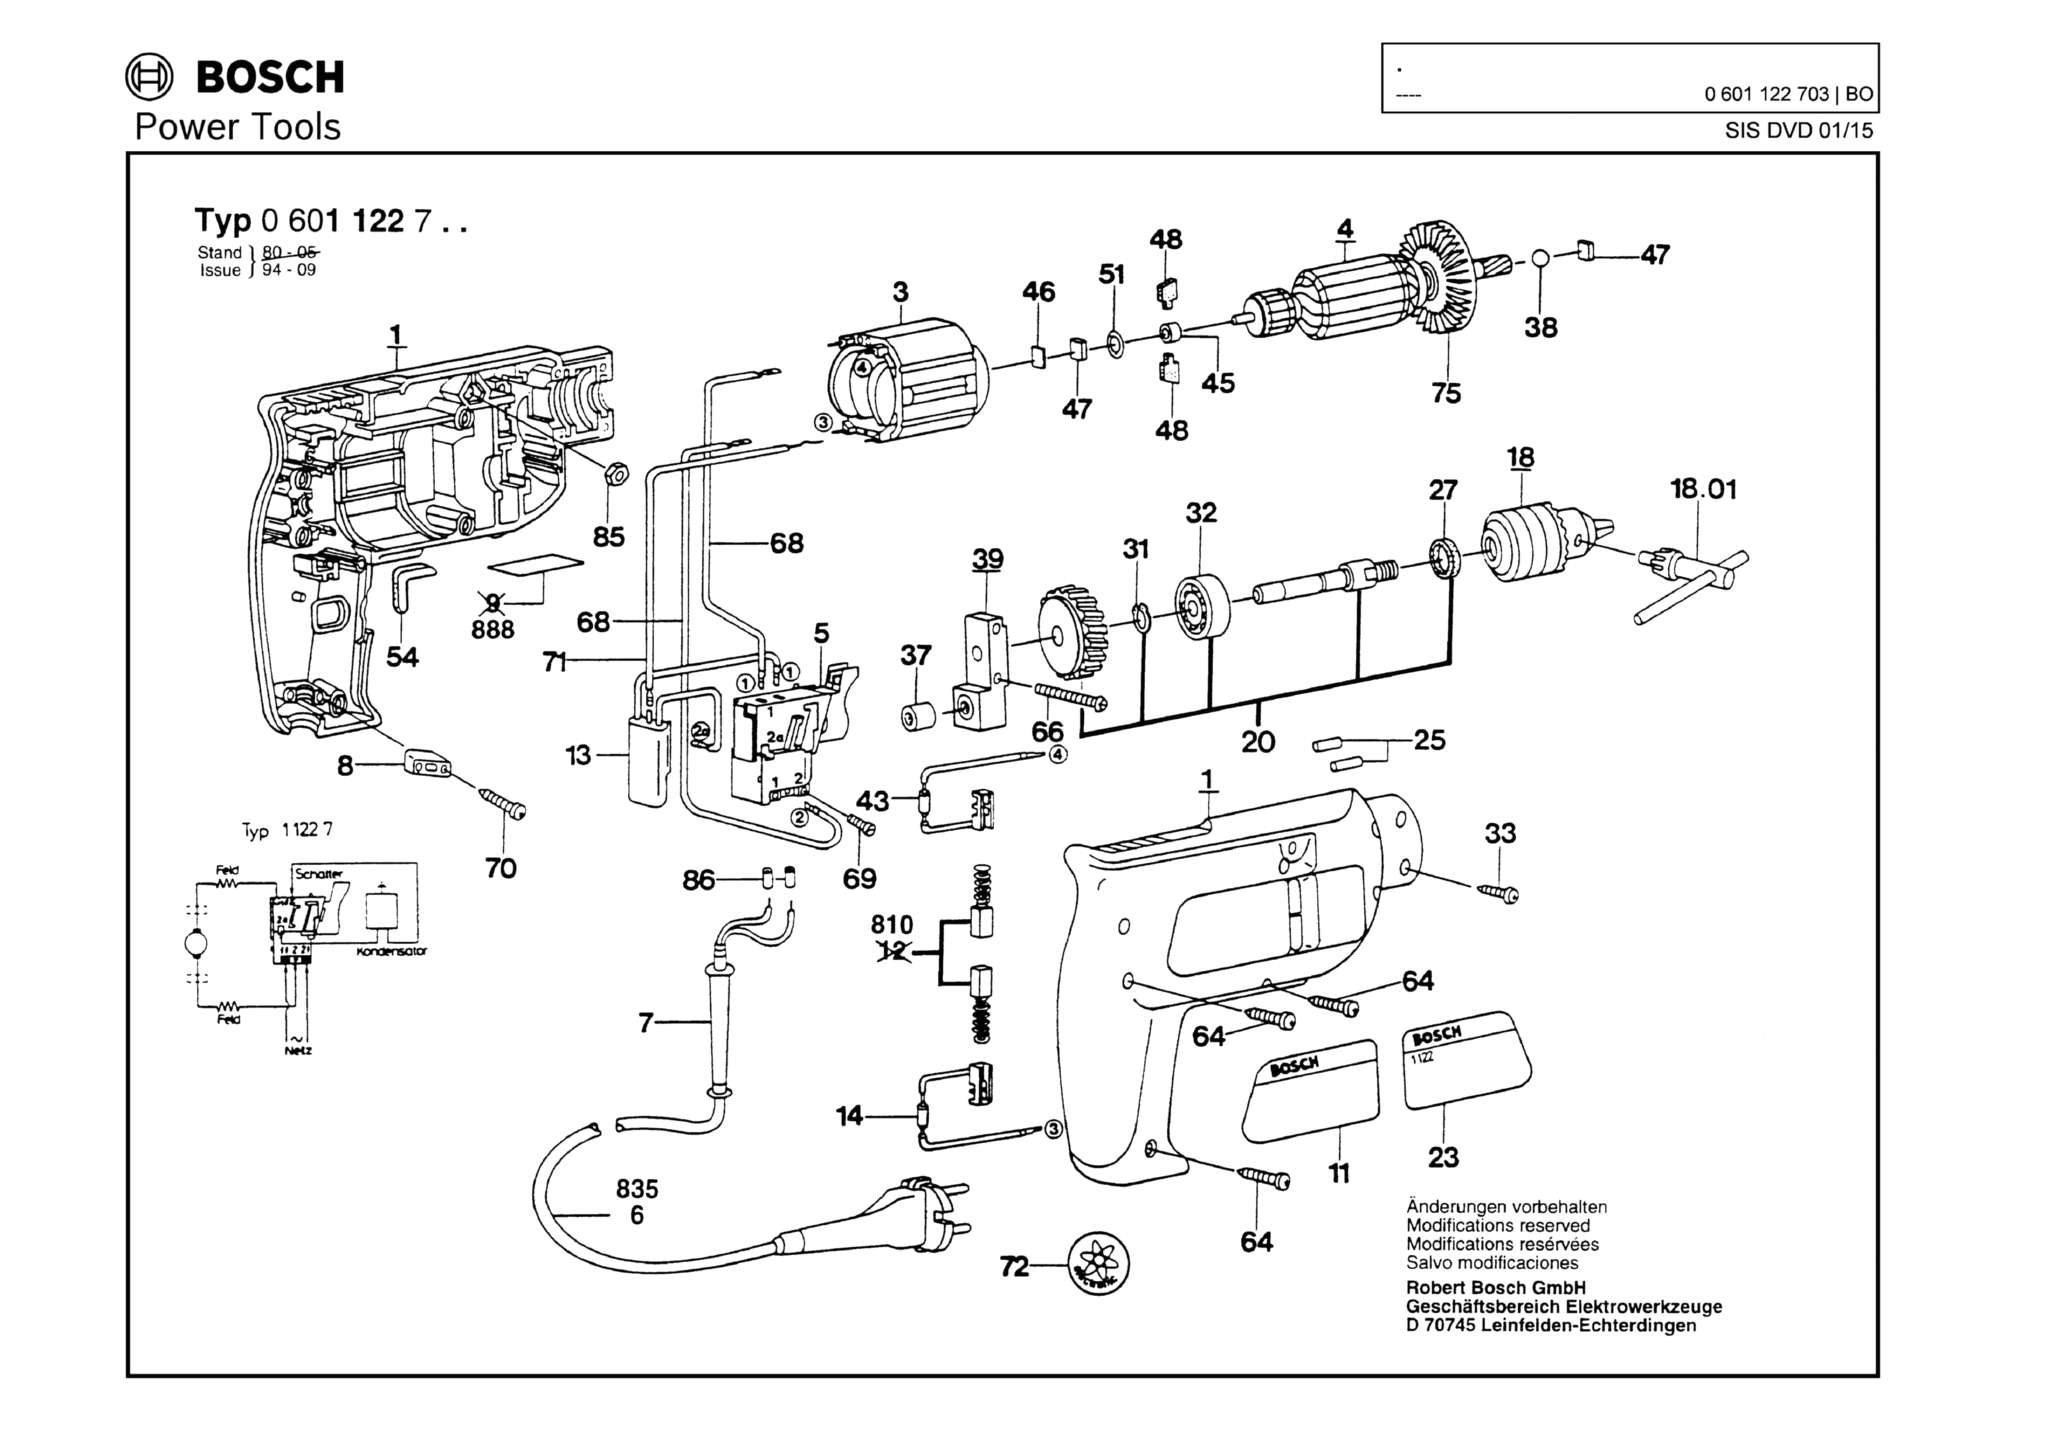 Запчасти, схема и деталировка Bosch (ТИП 0601122703)